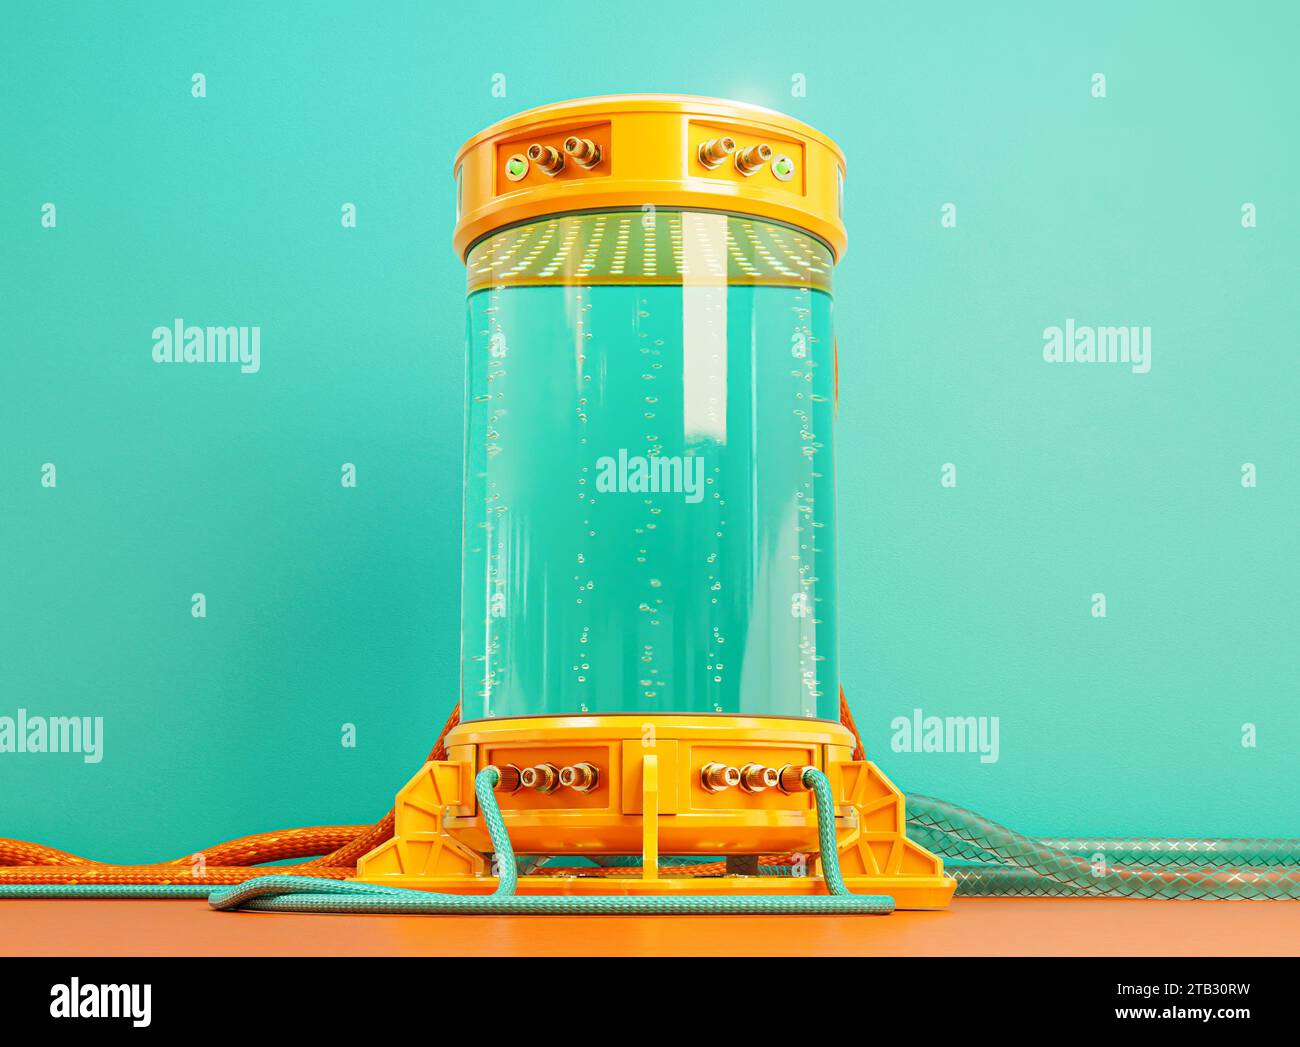 Una macchina criogenica per provette criogeniche da laboratorio futuristico dai colori brillanti riempita di liquido e bolle con cavi collegati e tubi in gomma - Foto Stock